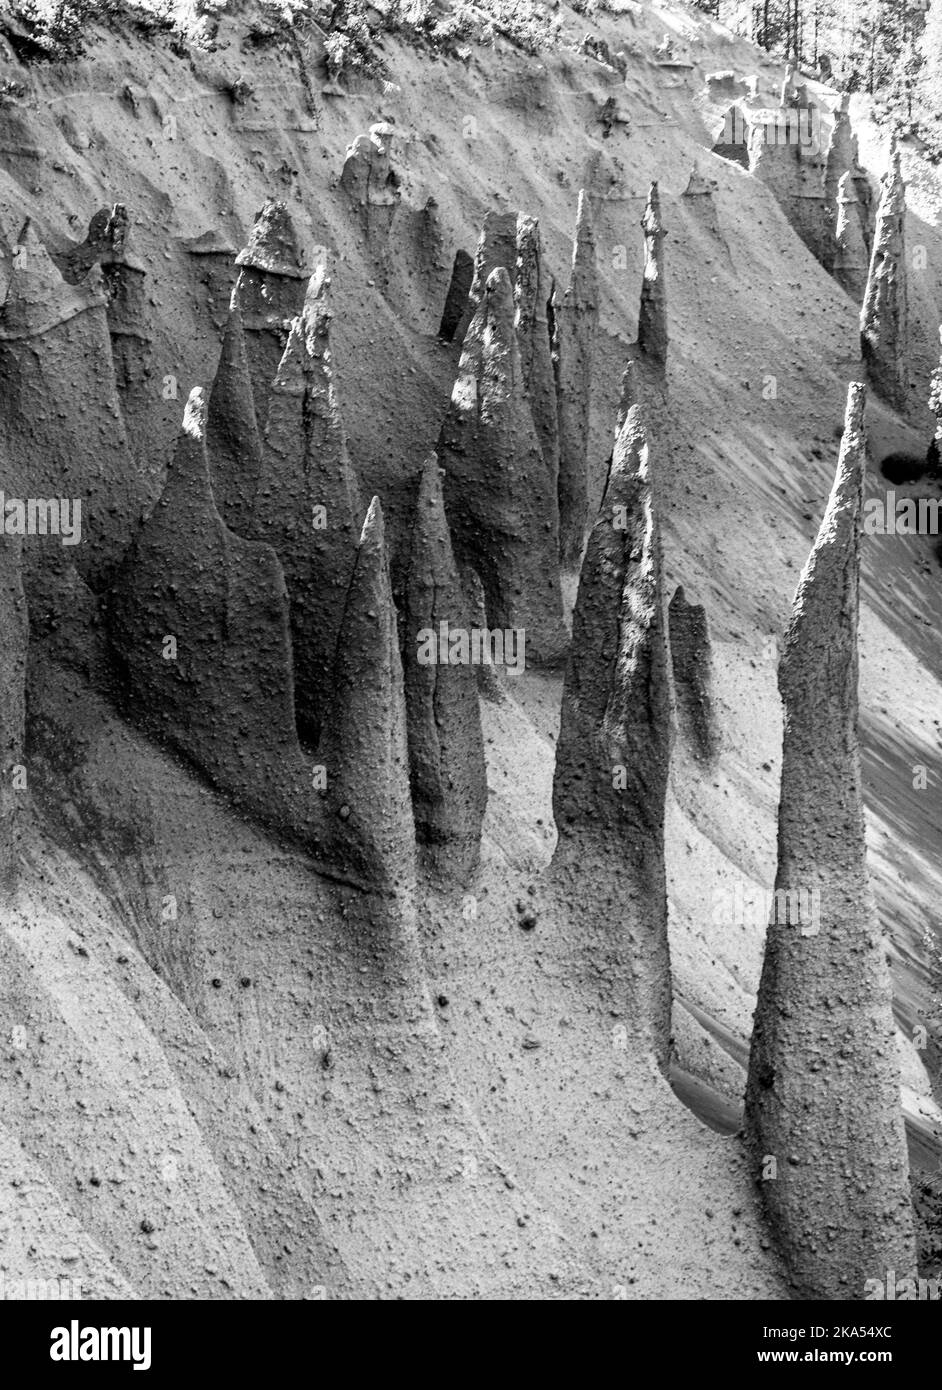 The Pinnacles, bocche vulcaniche che abbracciano il bordo del lago cratere nell'Oregon Park. Con una pineta che cresce intorno alle guglie appuntite. Foto Stock